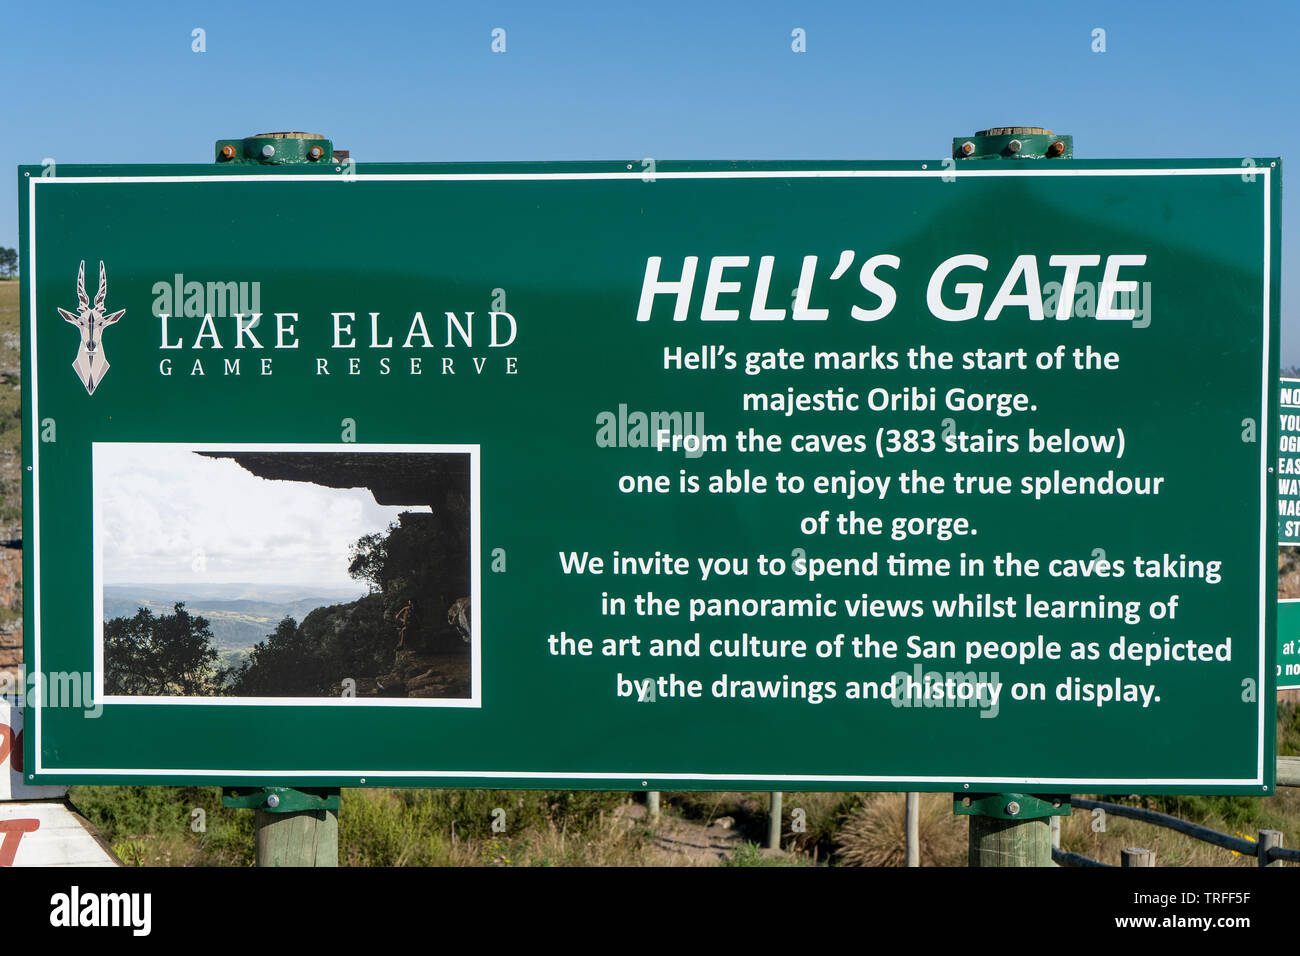 Durban, Sud Africa - 18 Maggio 2019: il lago di Eland Game Reserve - Hells Gate segno che descrivono le grotte che i turisti possono fare trekking all'Oribi Gorge. Foto Stock